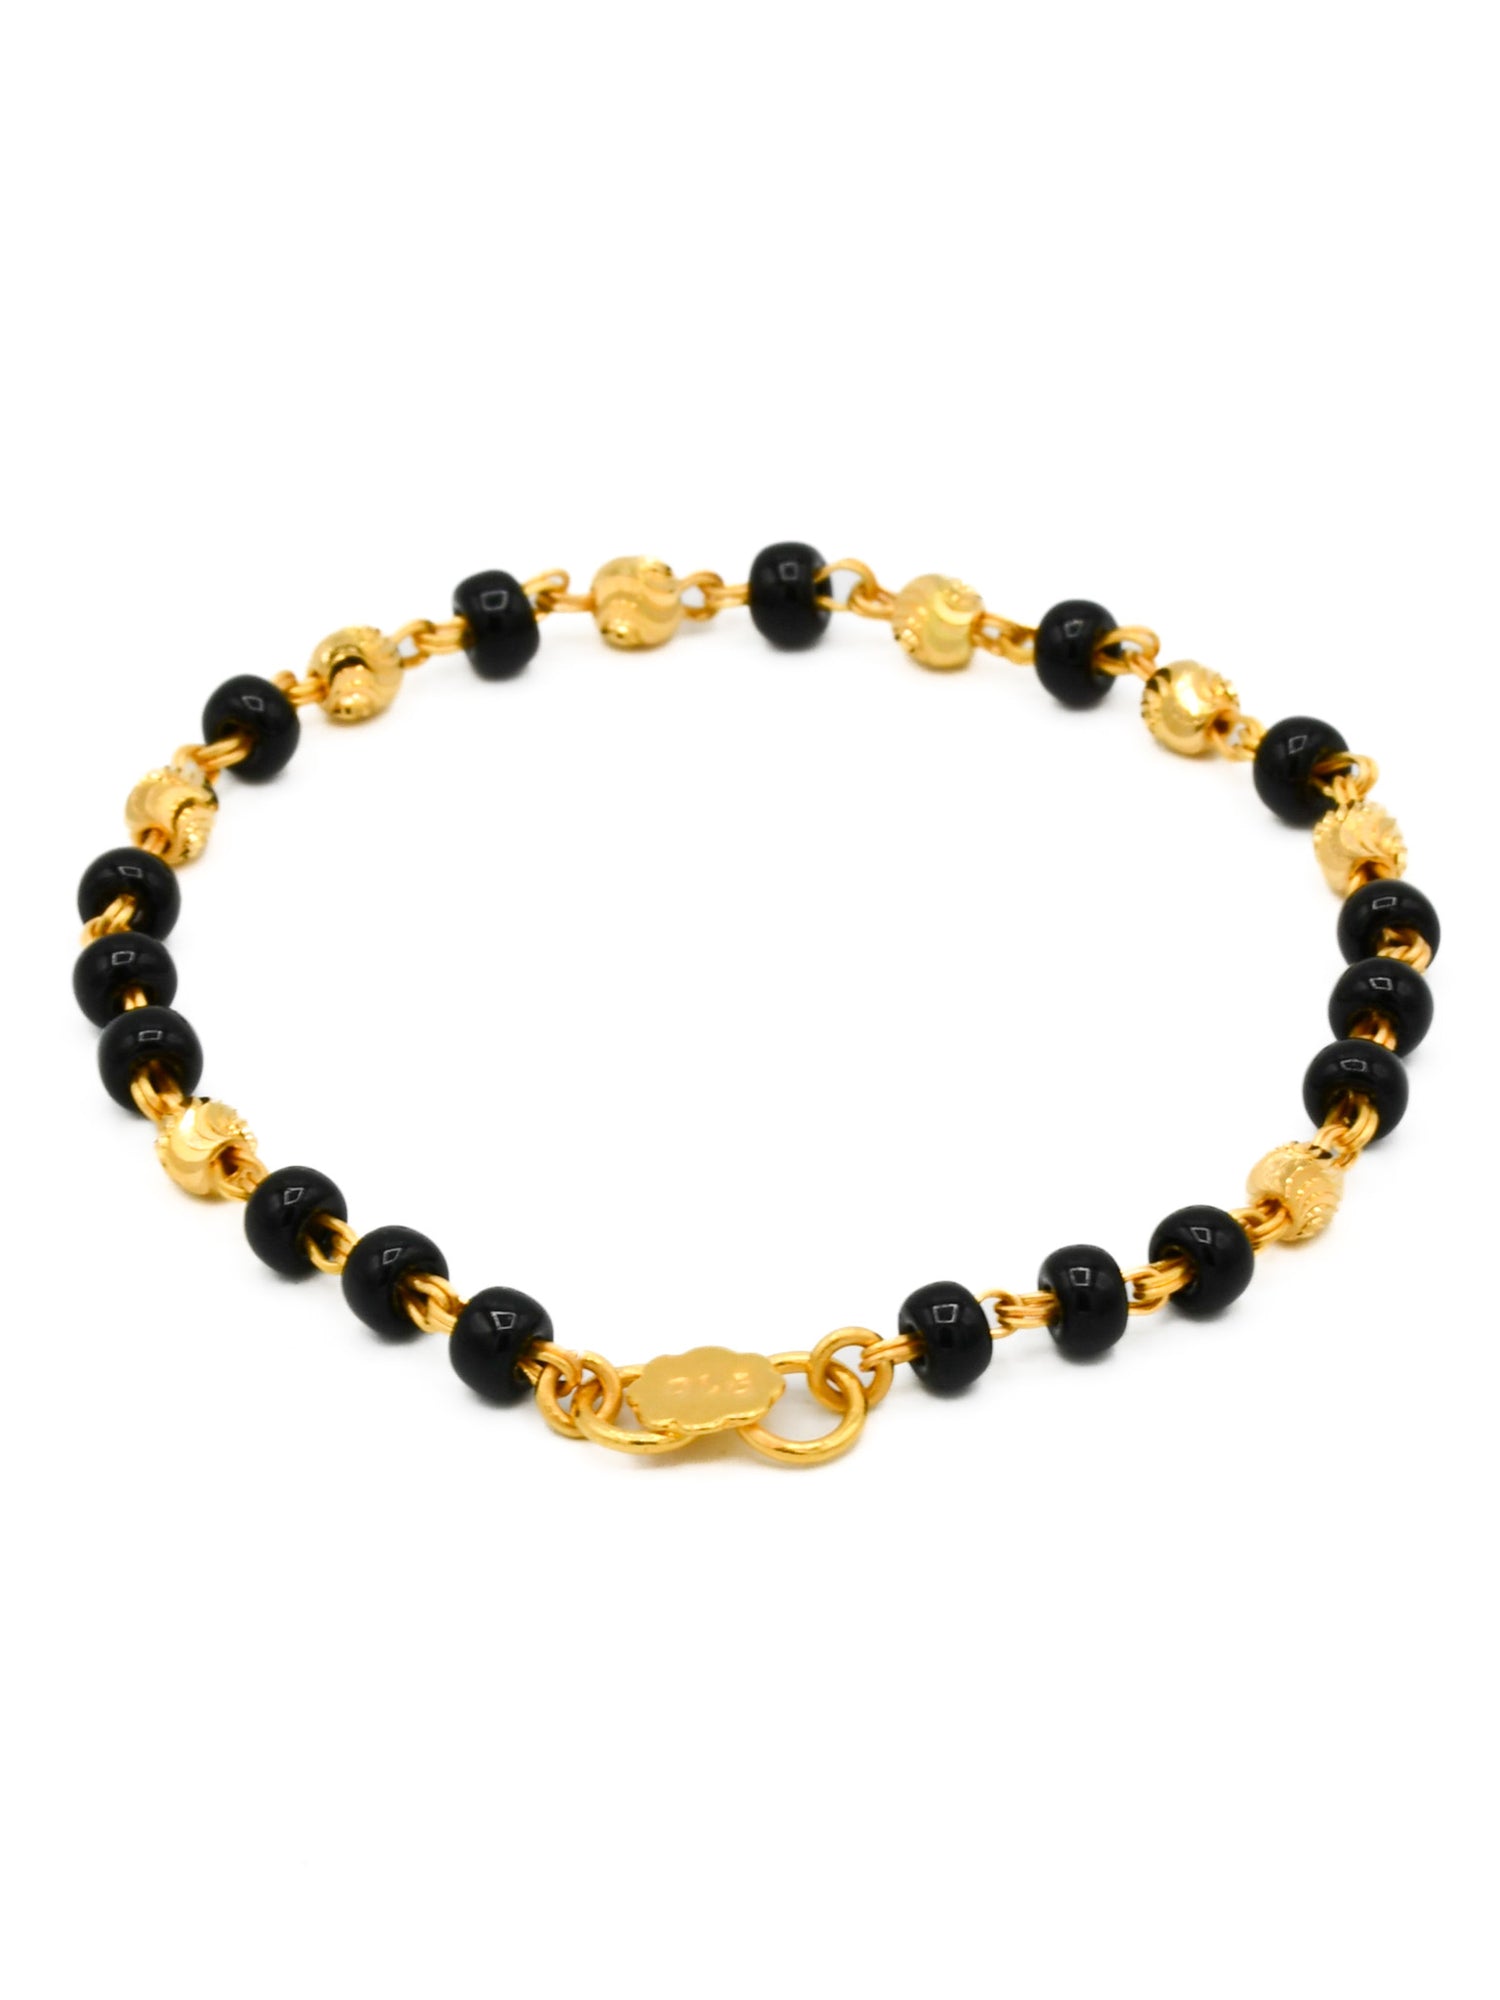 22ct Gold Black Beads Pair Baby Bracelet - Roop Darshan